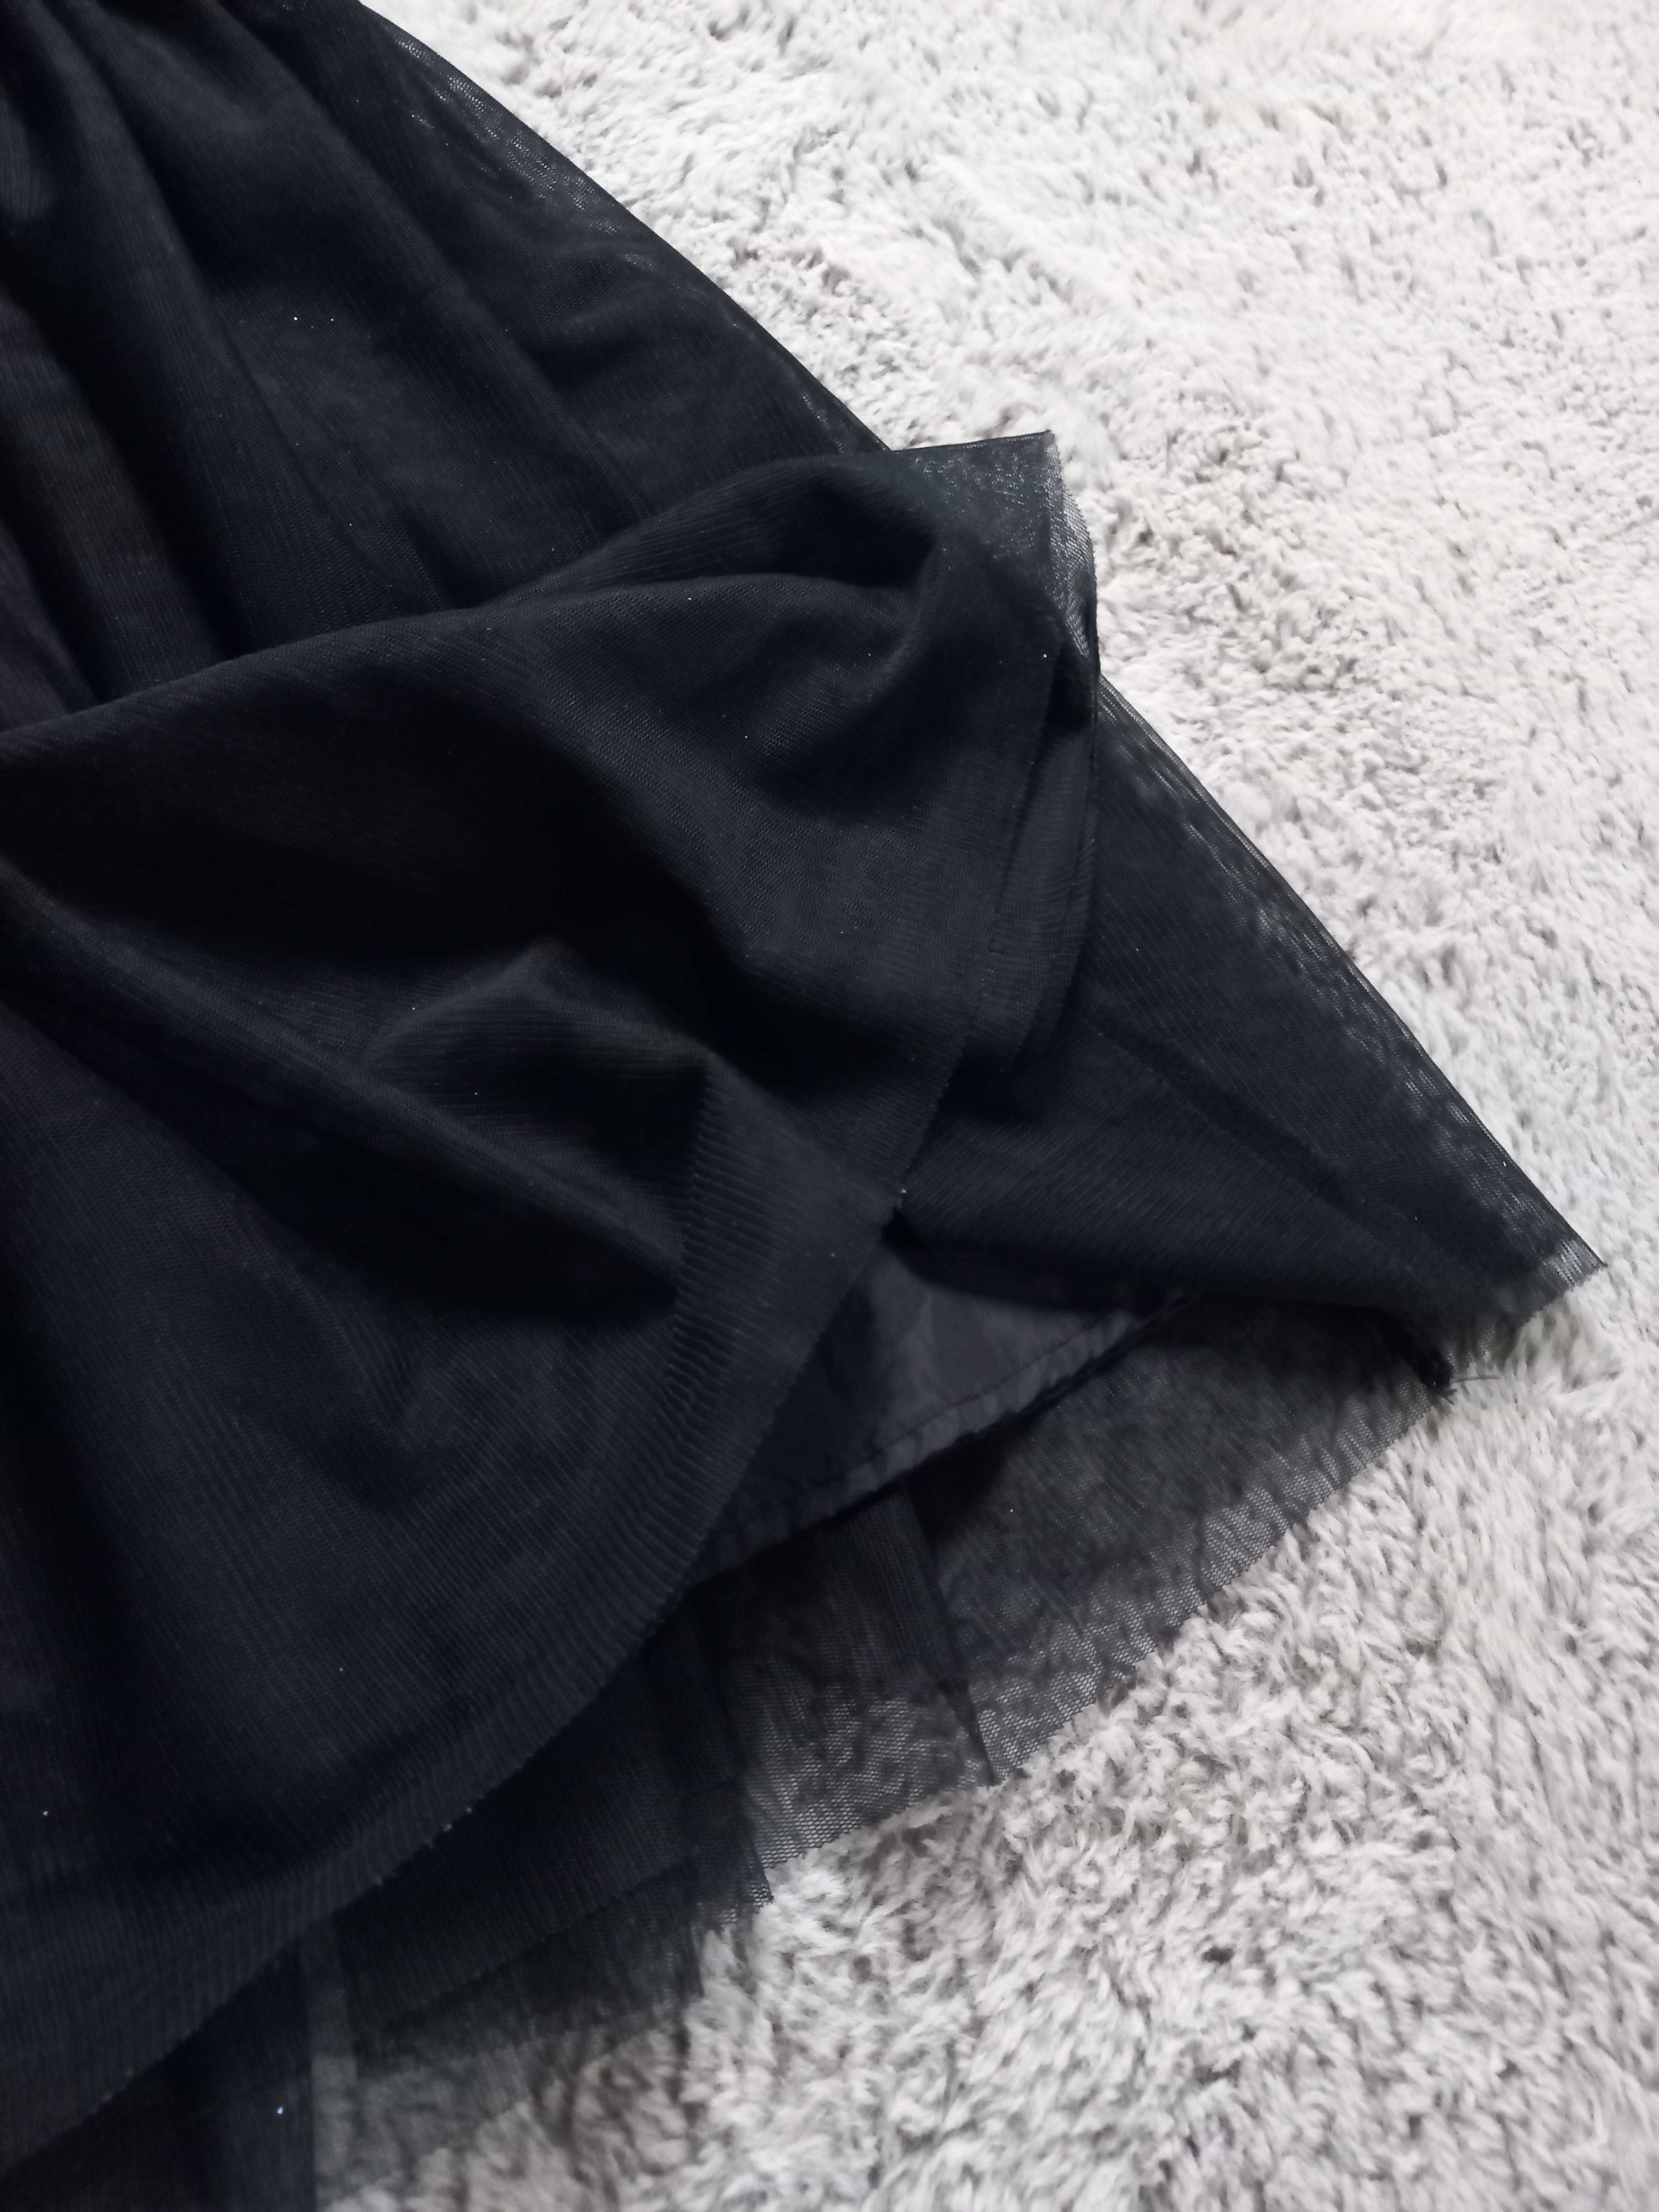 H&M Sukienka Sukieneczka tiul Suknia wizytowa 122 / 128 cm  6/8 lat